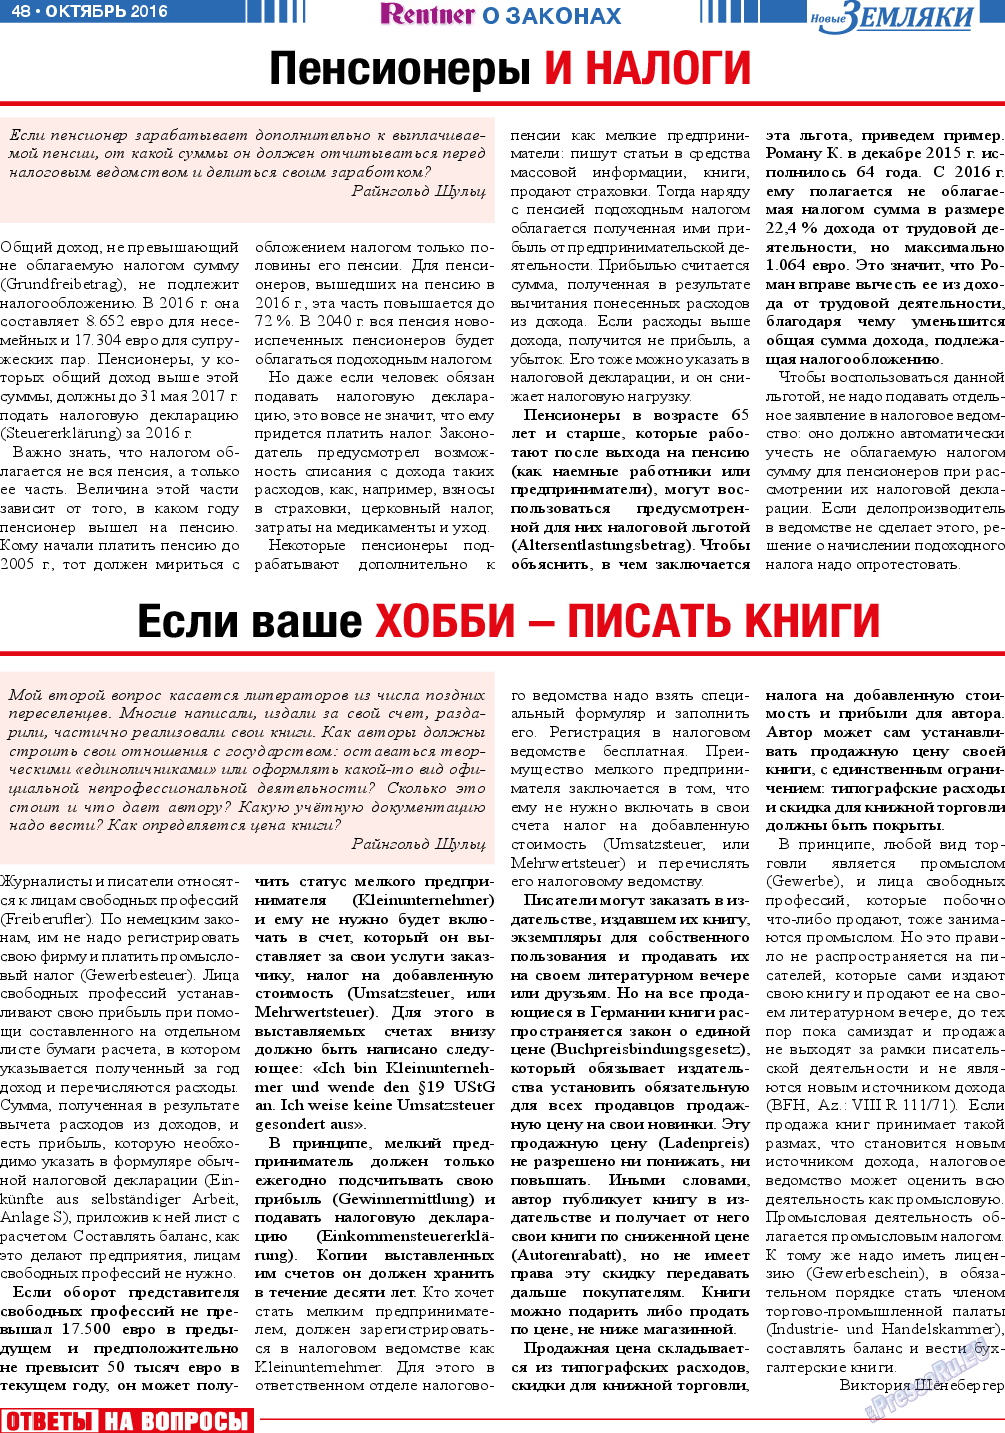 Новые Земляки, газета. 2016 №10 стр.48